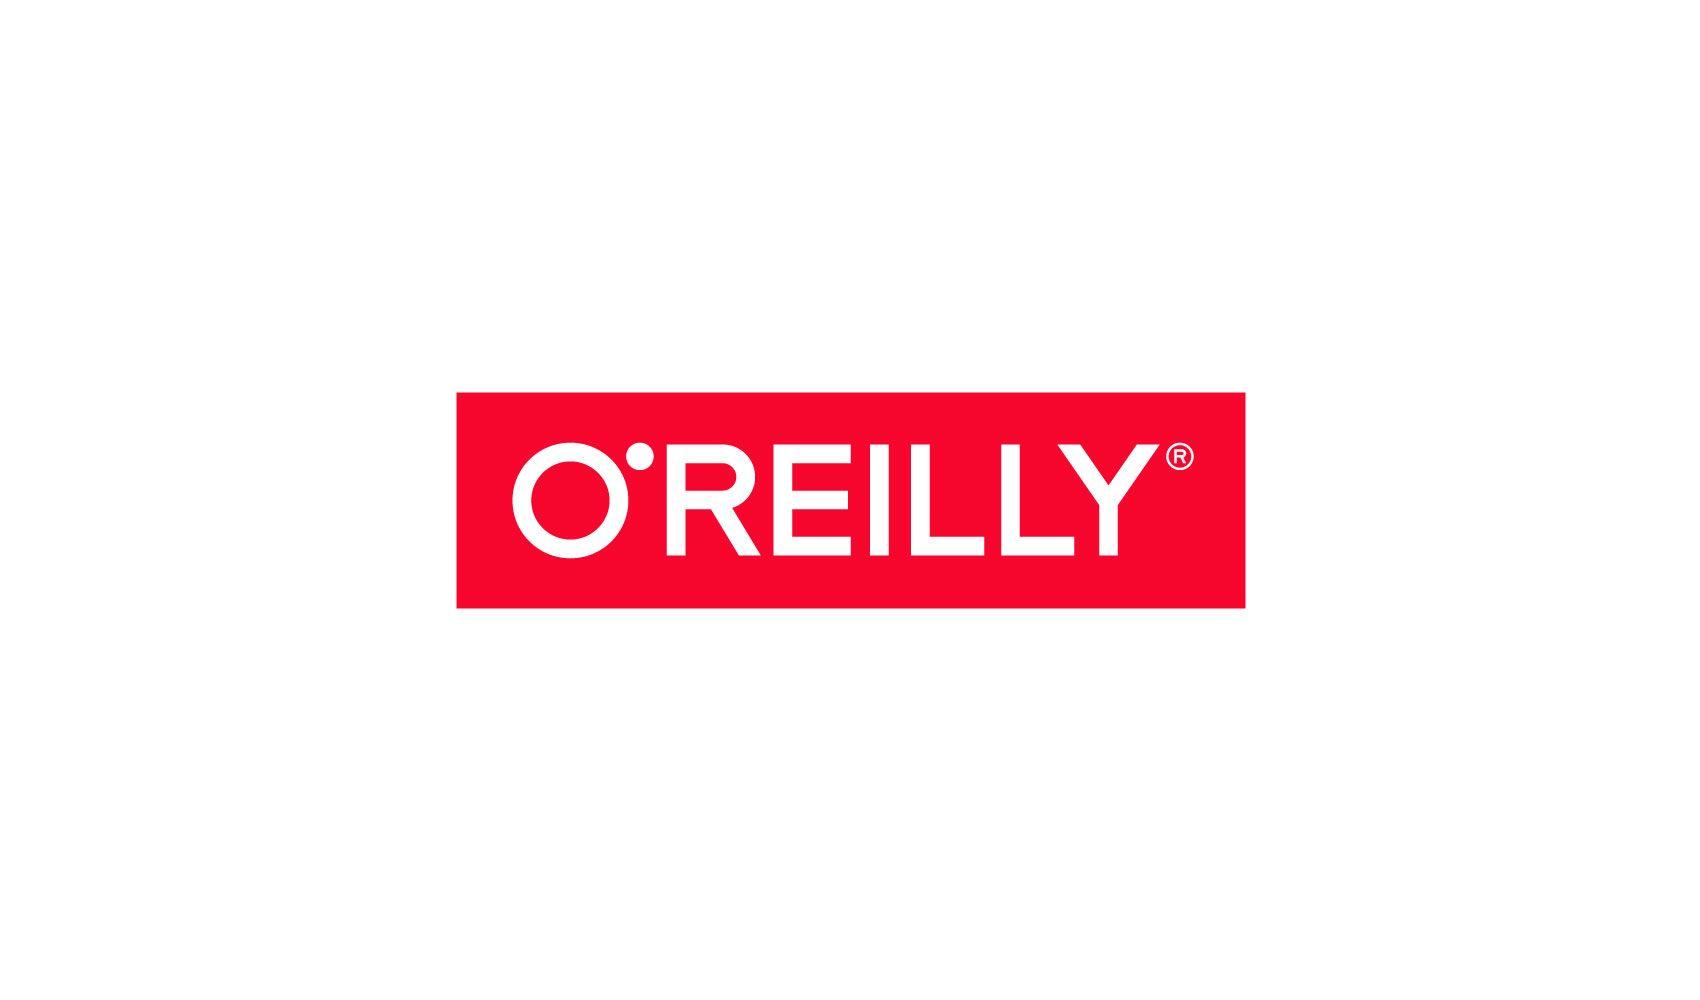 Reilly Logo - O'Reilly Identity — TRIBORO